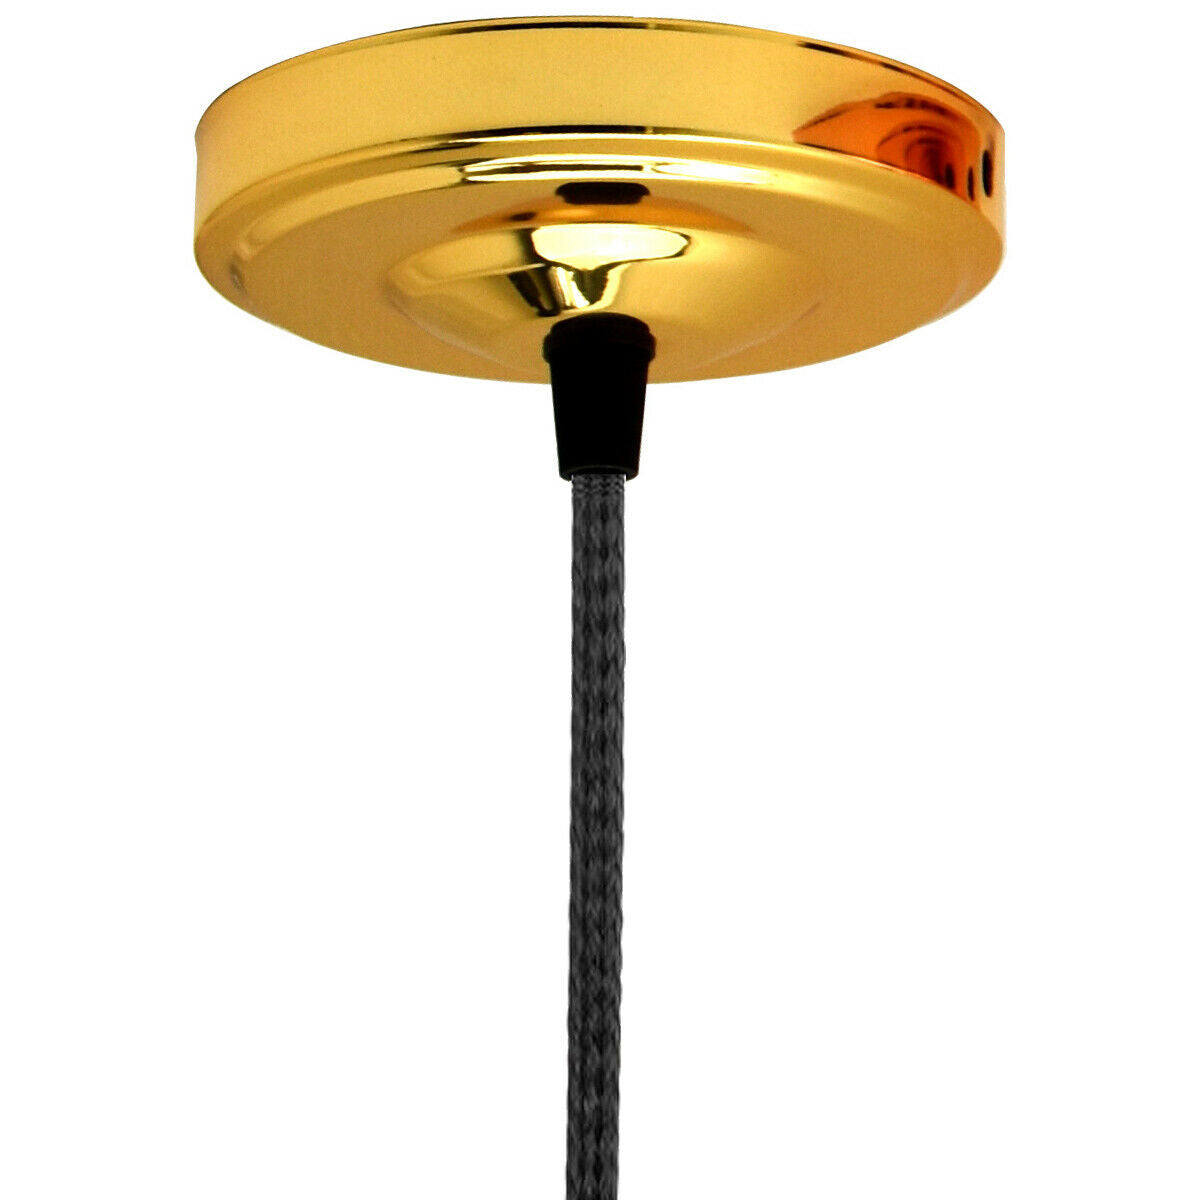 French Gold Ceiling Rose 108mm Diameter Vintage Light Fitting~1469 - LEDSone UK Ltd